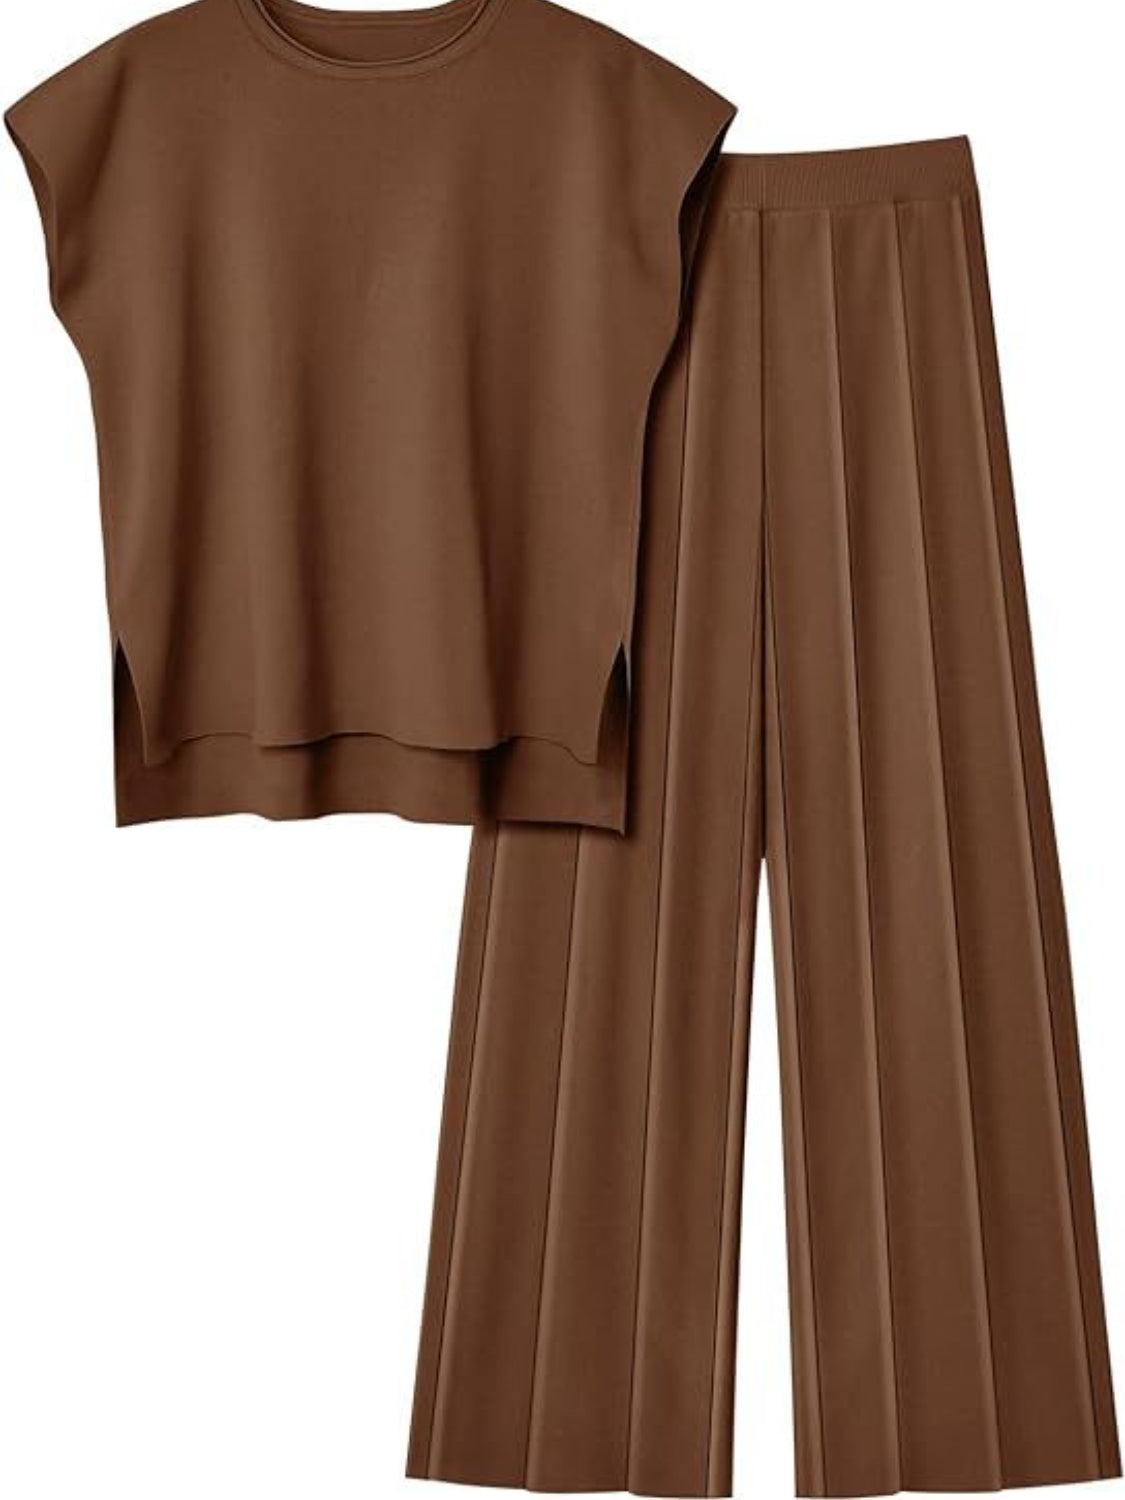 TEEK - Round Neck Cap Sleeve Top Pants Knit Set SET TEEK Trend Chestnut S 